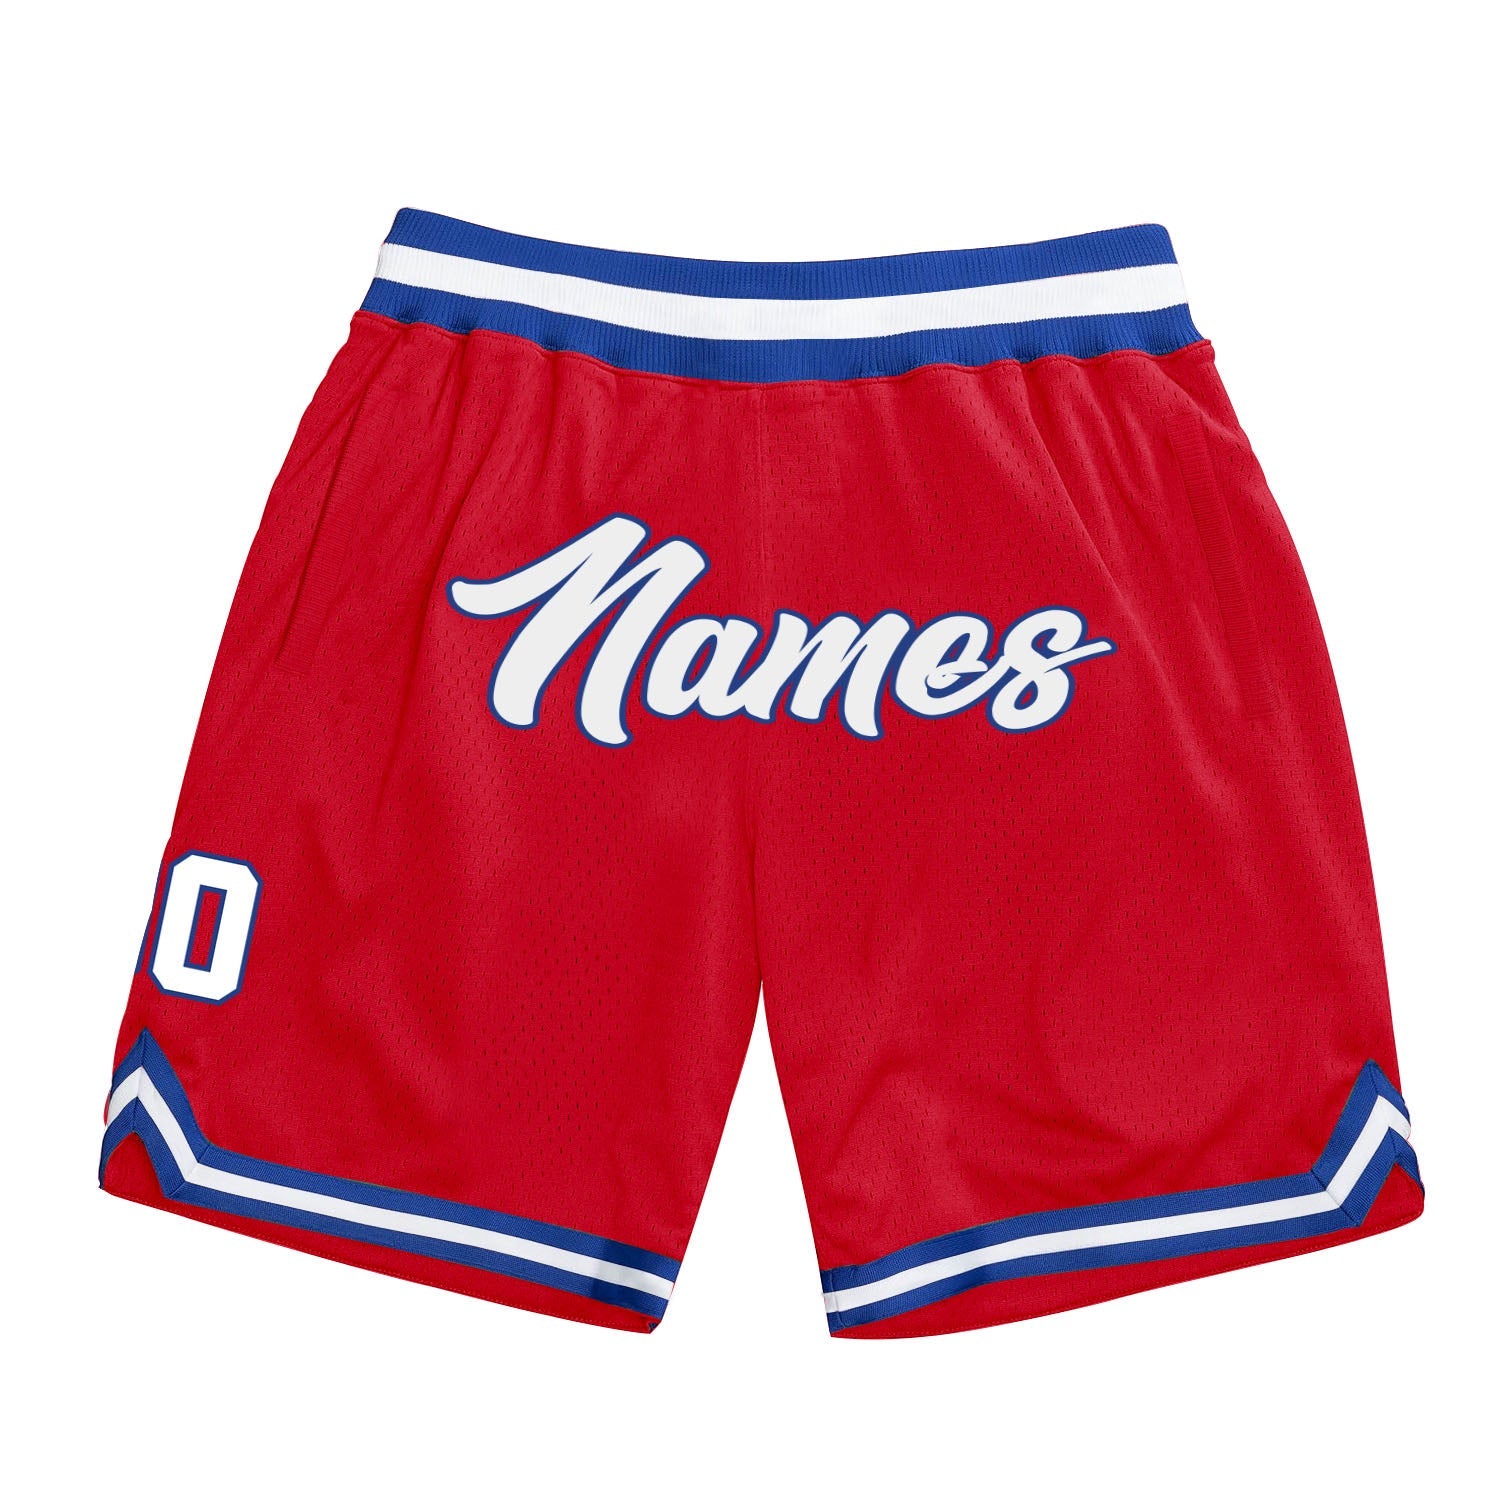 Shorts de basquete autênticos vermelhos, brancos e reais, personalizados